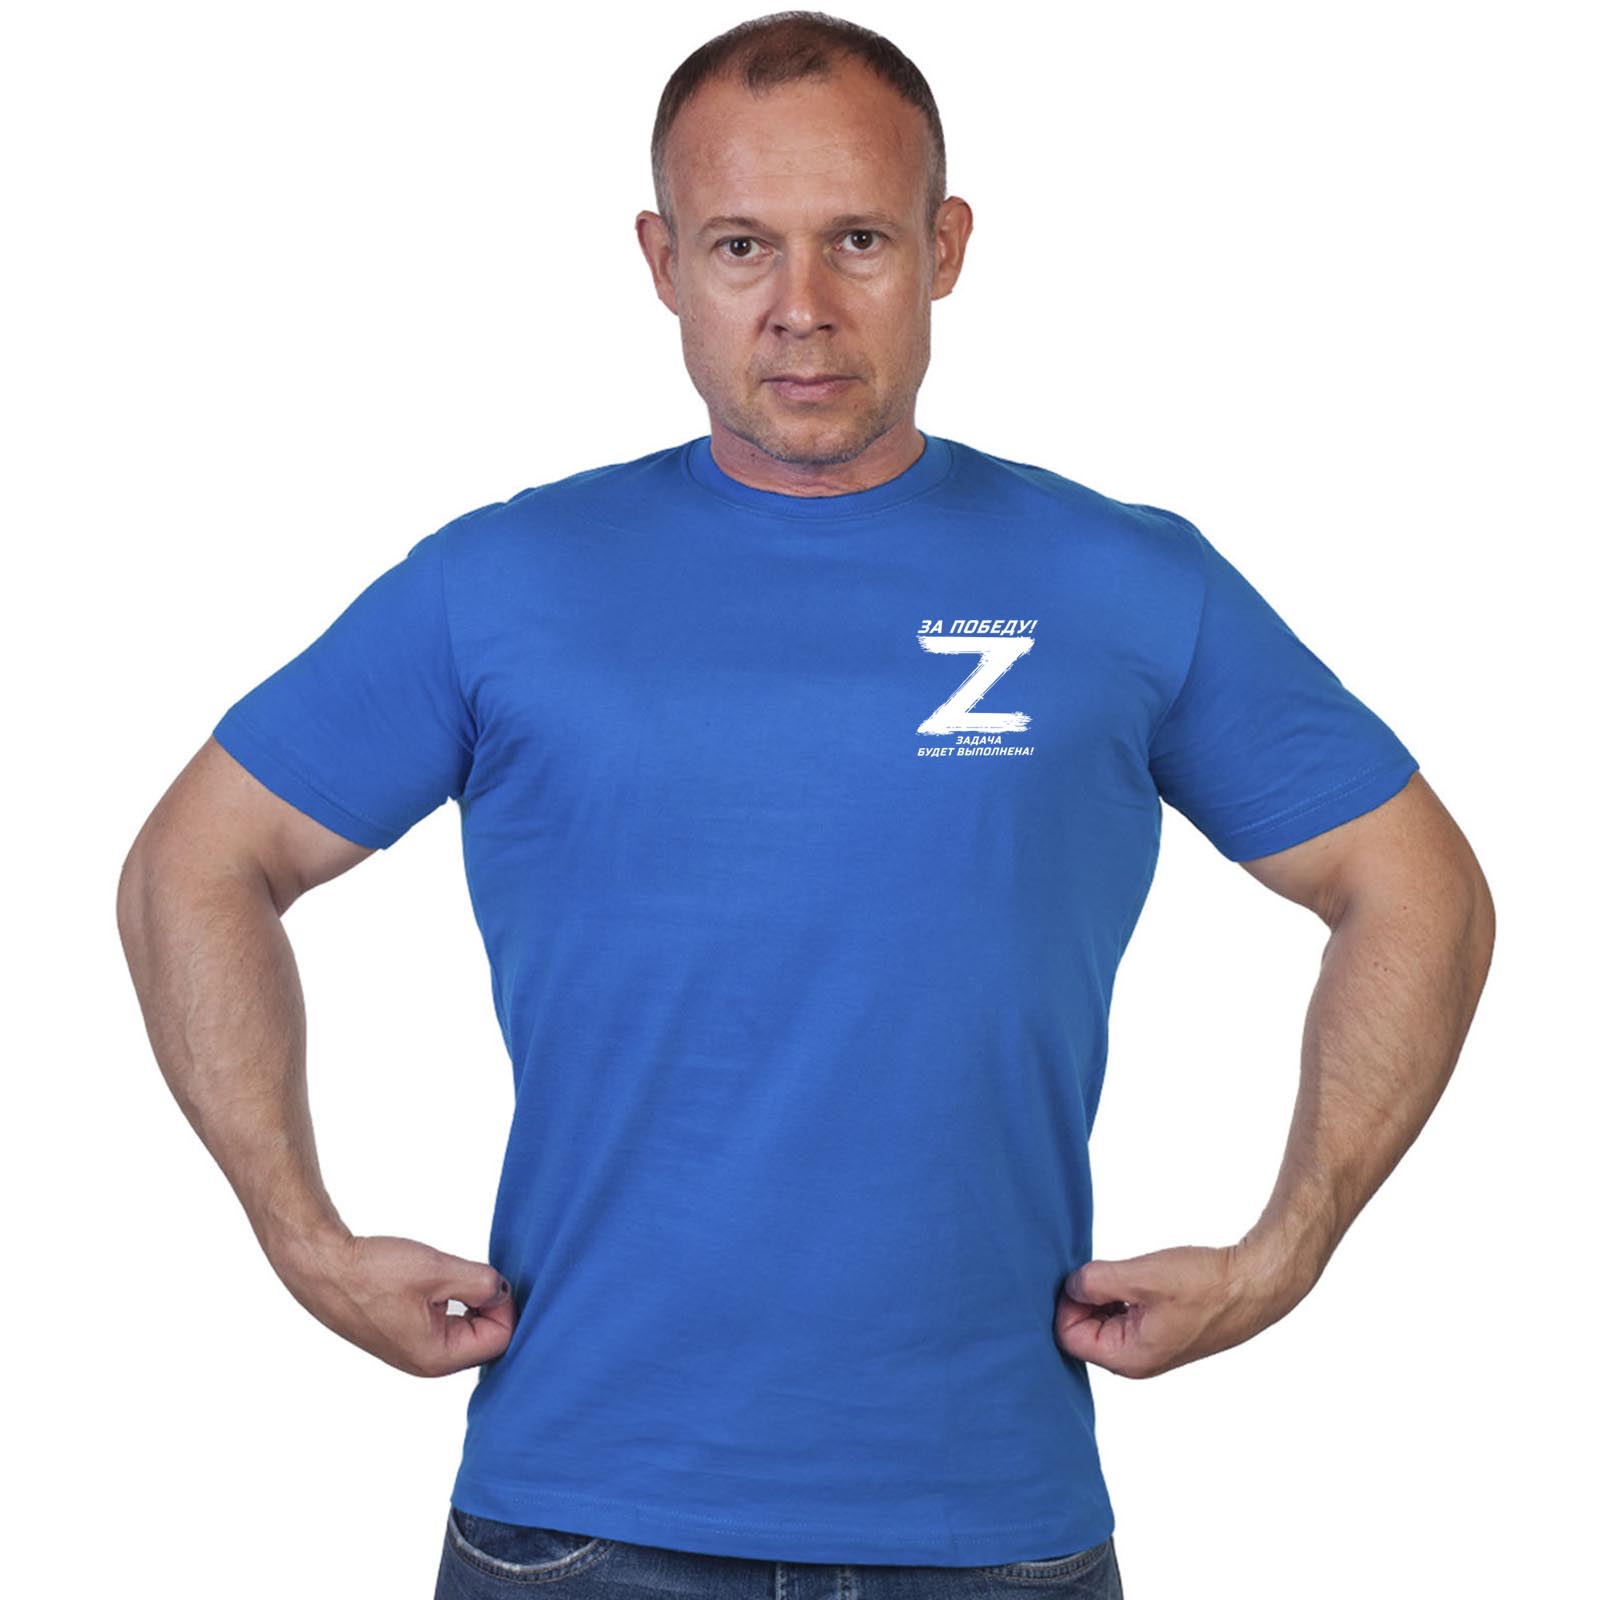 Васильковая футболка с термопереводкой Операция «Z»